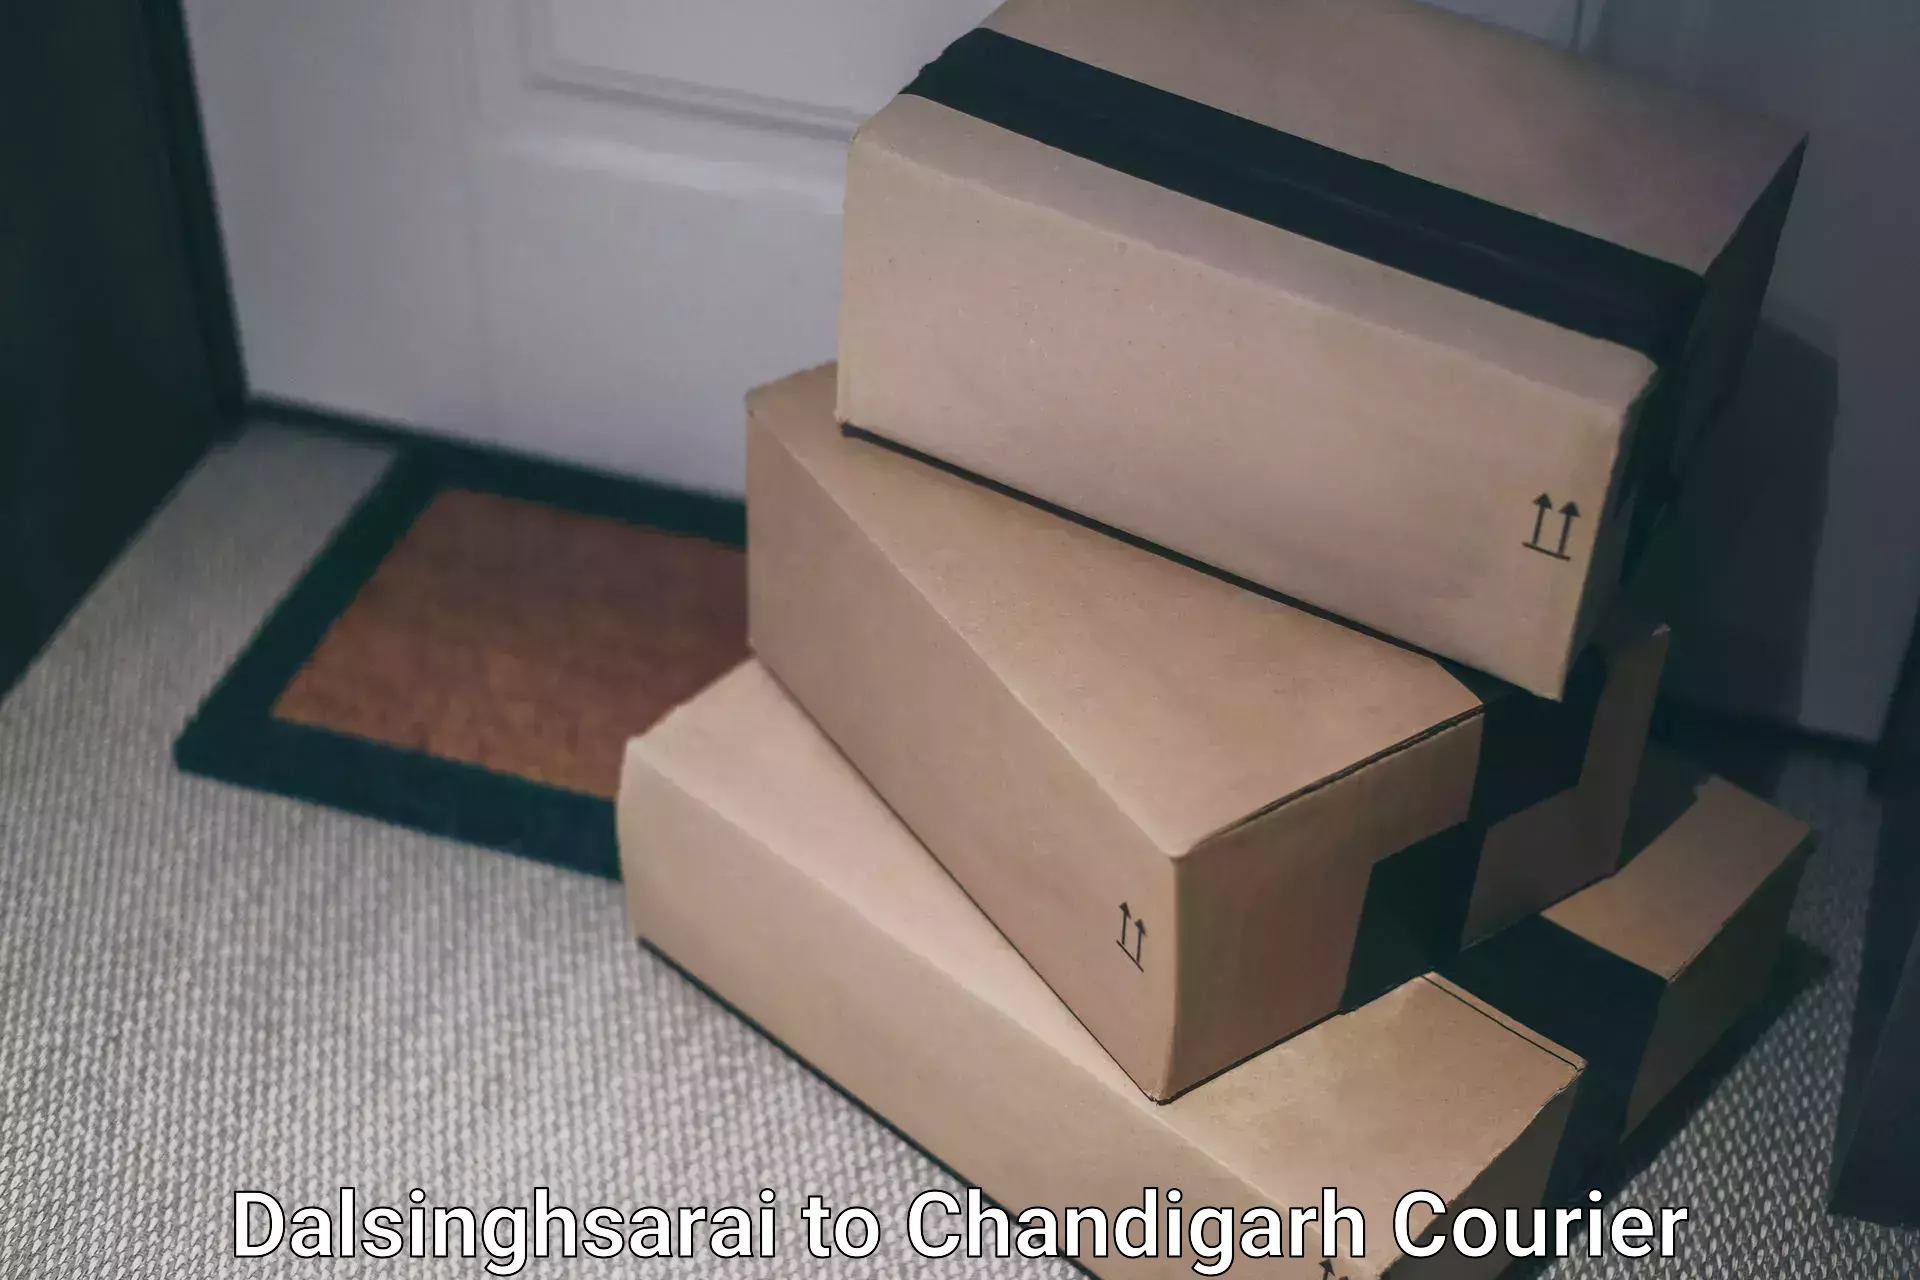 Efficient parcel service Dalsinghsarai to Kharar